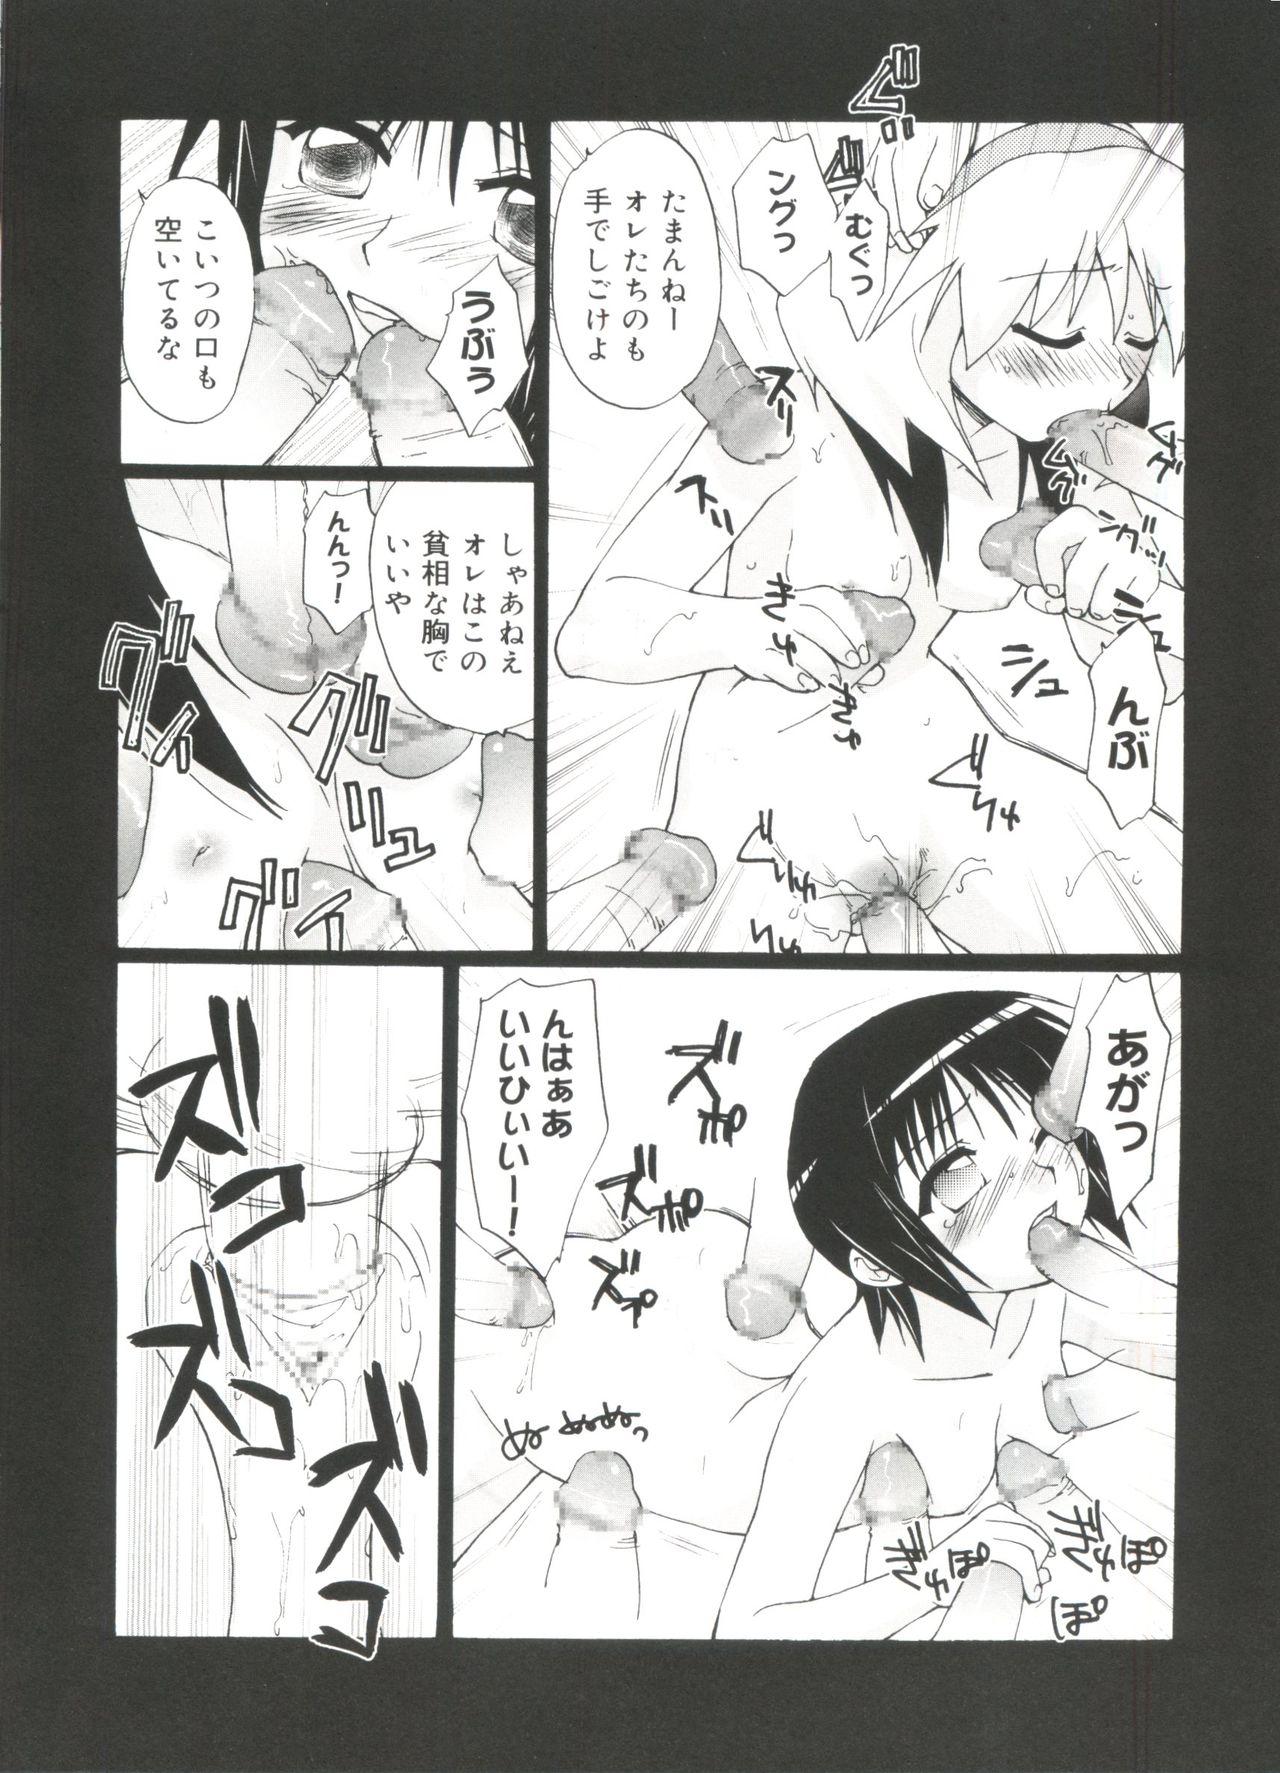 Pick Up Love Chara Zensho Vol. 2 - Cardcaptor sakura Sister princess Chobits Tokyo mew mew Mahoromatic Jerkoff - Page 11